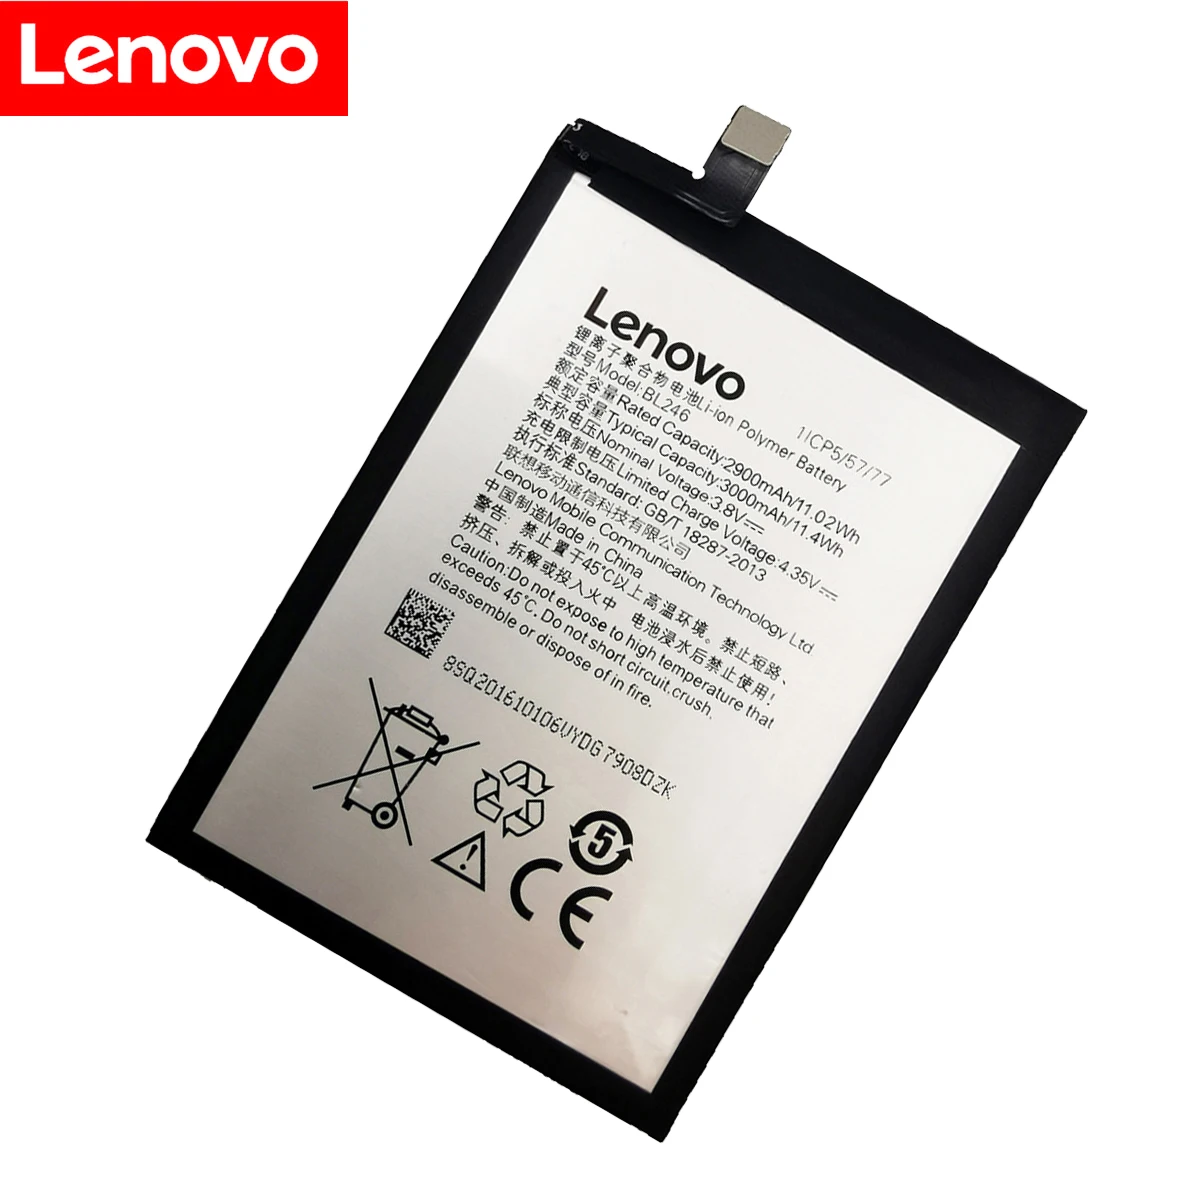 100% מקוריים נבדק 3000mAh BL246 סוללה עבור Lenovo Vibe Shot תחושה Z90 Z90-3 Z90-7 z90a40 מקס טלפון BL246 החלפת הסוללה - 1